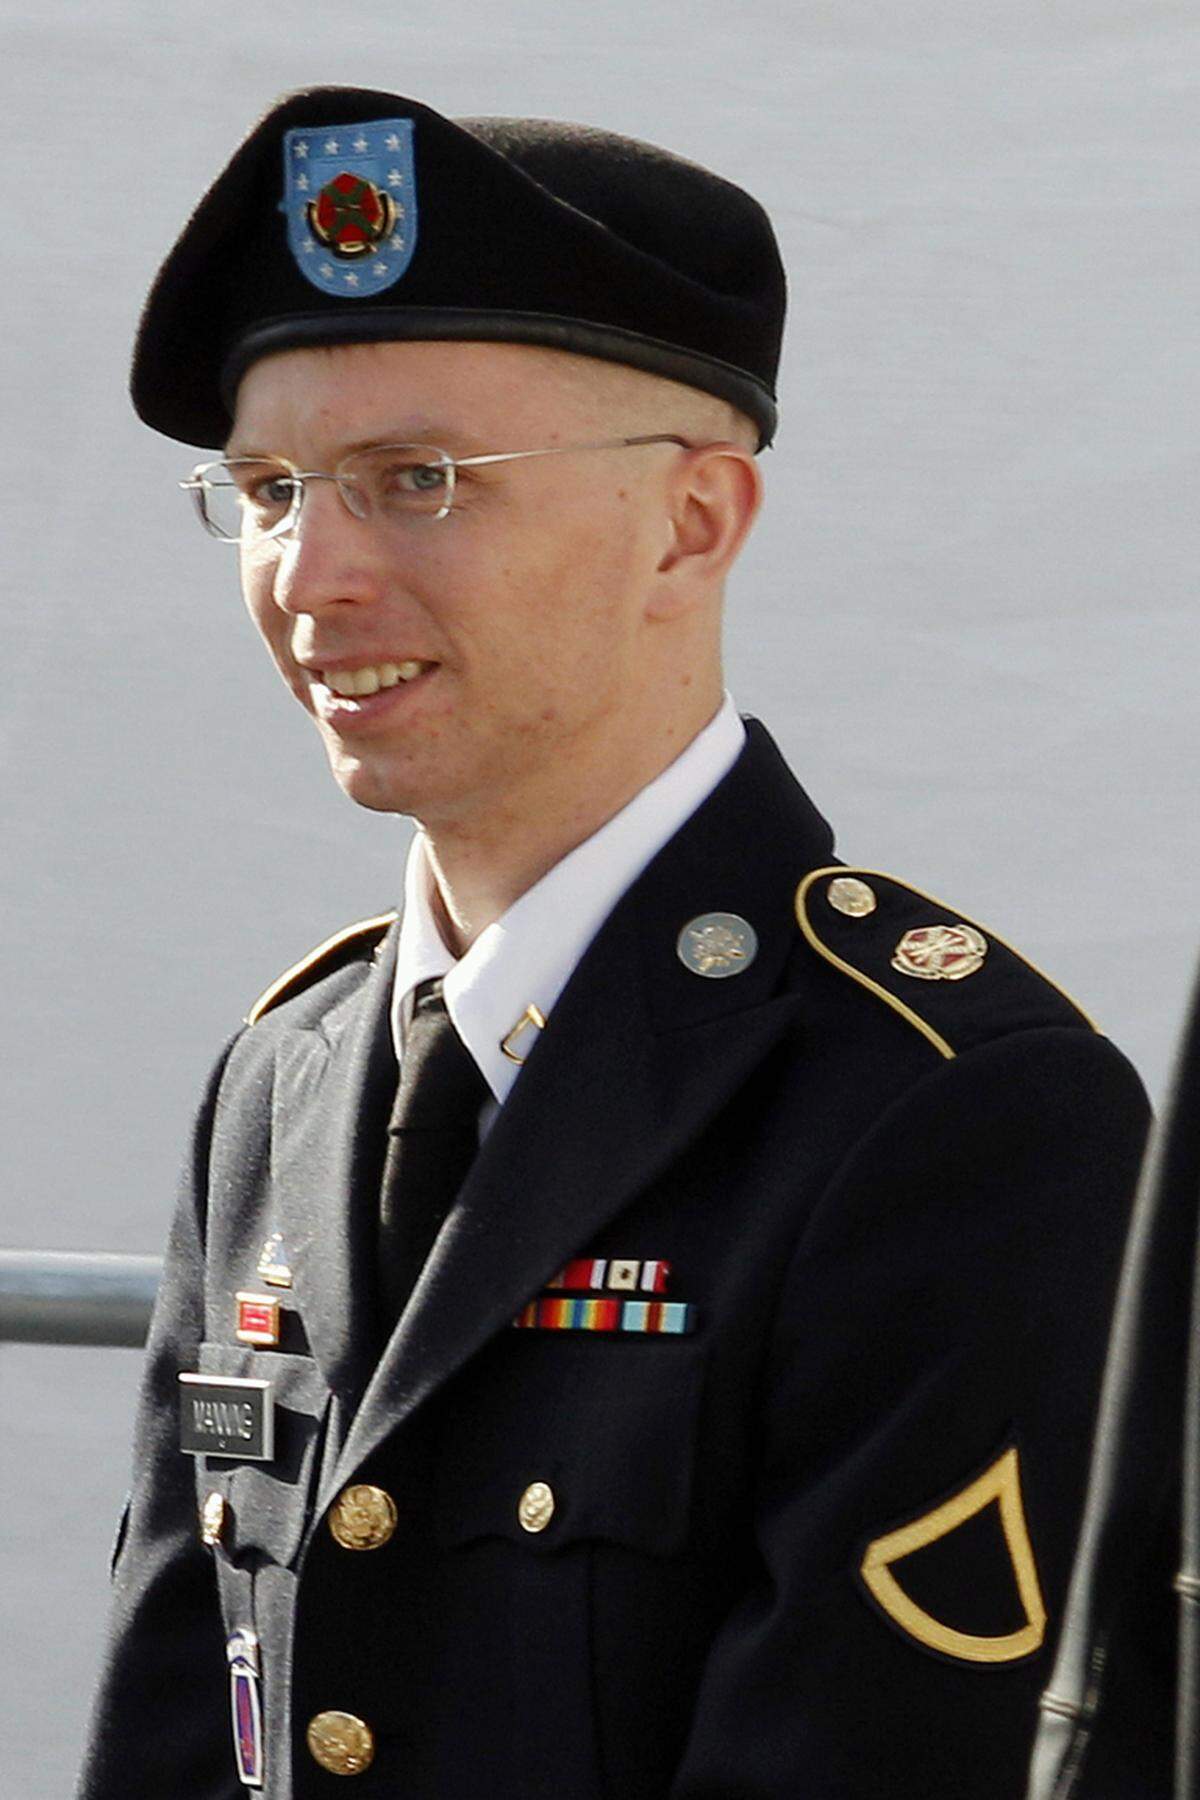 Die Liste der Vorwürfe gegen Bradley bzw. Chelsea Manning war lang. Die Anklage umfasste 21 Punkte - vom Diebstahl von Regierungseigentum bis hin zur Spionage. Der schwerwiegende Vorwurf lautet: „Unterstützung des Feindes“. Manning erklärte sich in einer Reihe von Anklagepunkten für schuldig. Sie räumte ein, 700.000 Dokumente an Wikileaks weitergeleitet zu haben. Die Kollaboration mit dem Feind weist sie zurück.